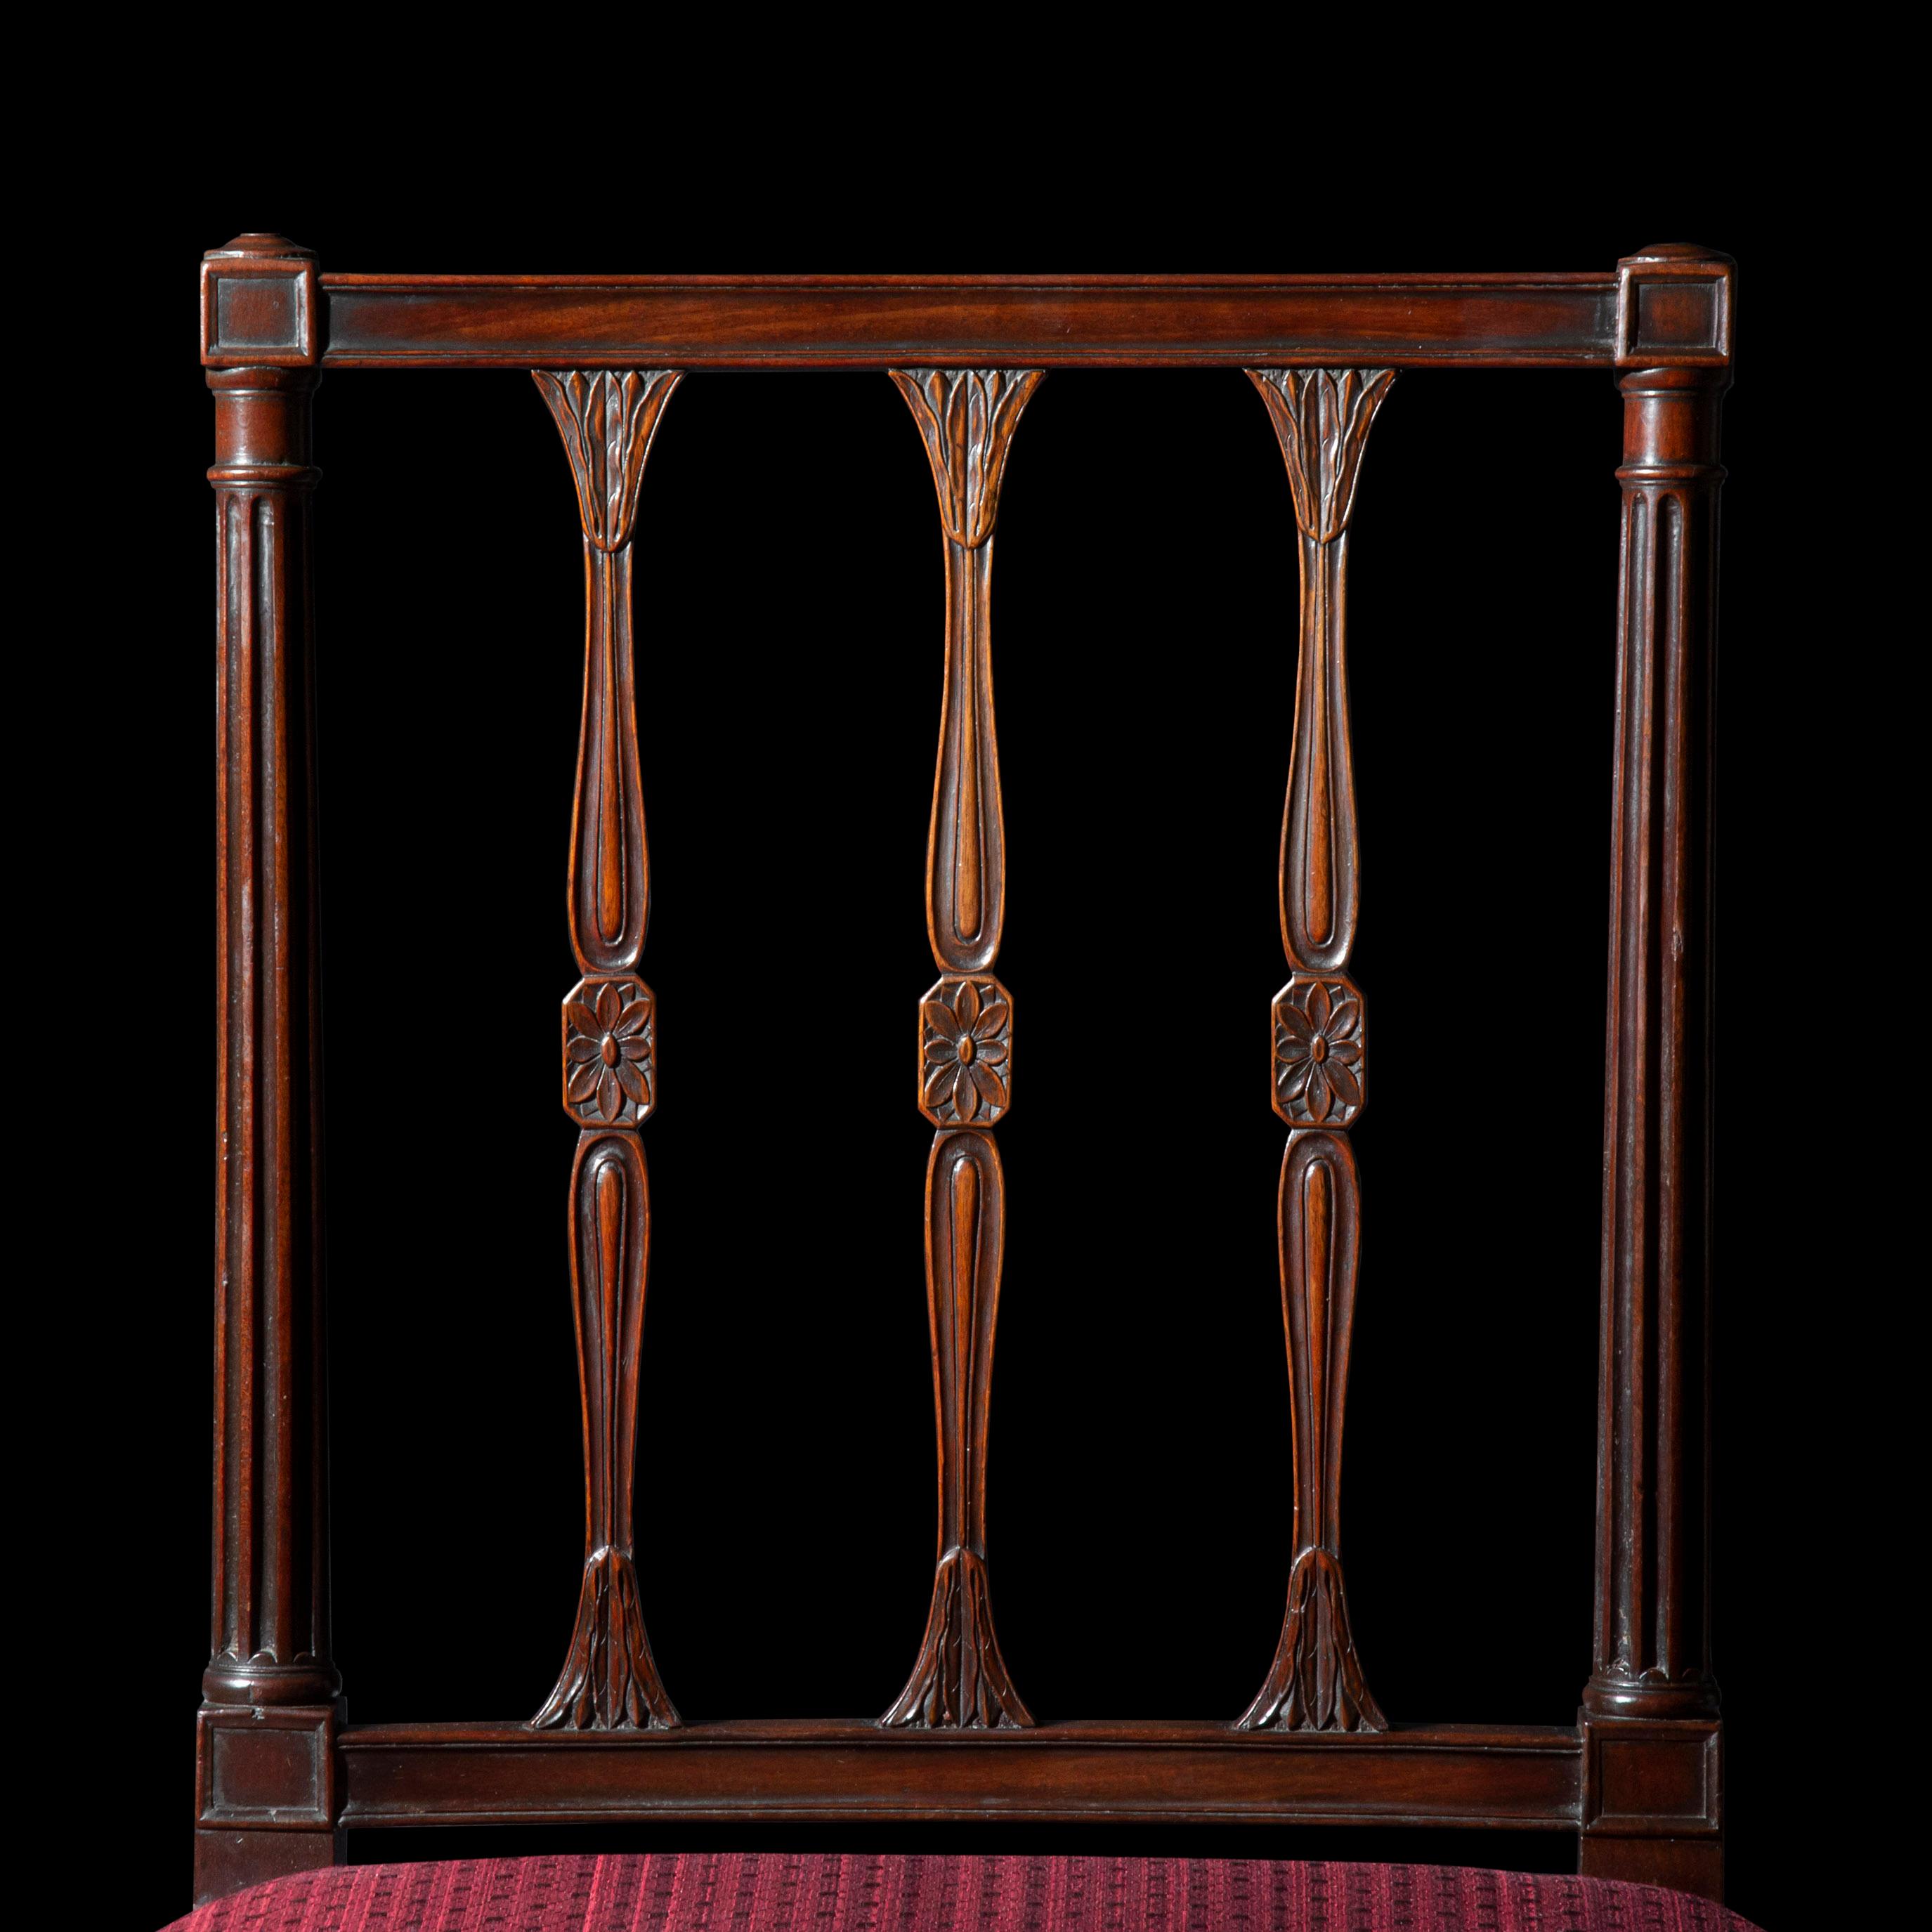 Un ensemble de six chaises de salle à manger en acajou d'époque George III, extrêmement élégantes et de superbe qualité.  Une paire de fauteuils assortis est disponible séparément.

Anglais, vers 1780-1800

Pourquoi nous les aimons
Modèle